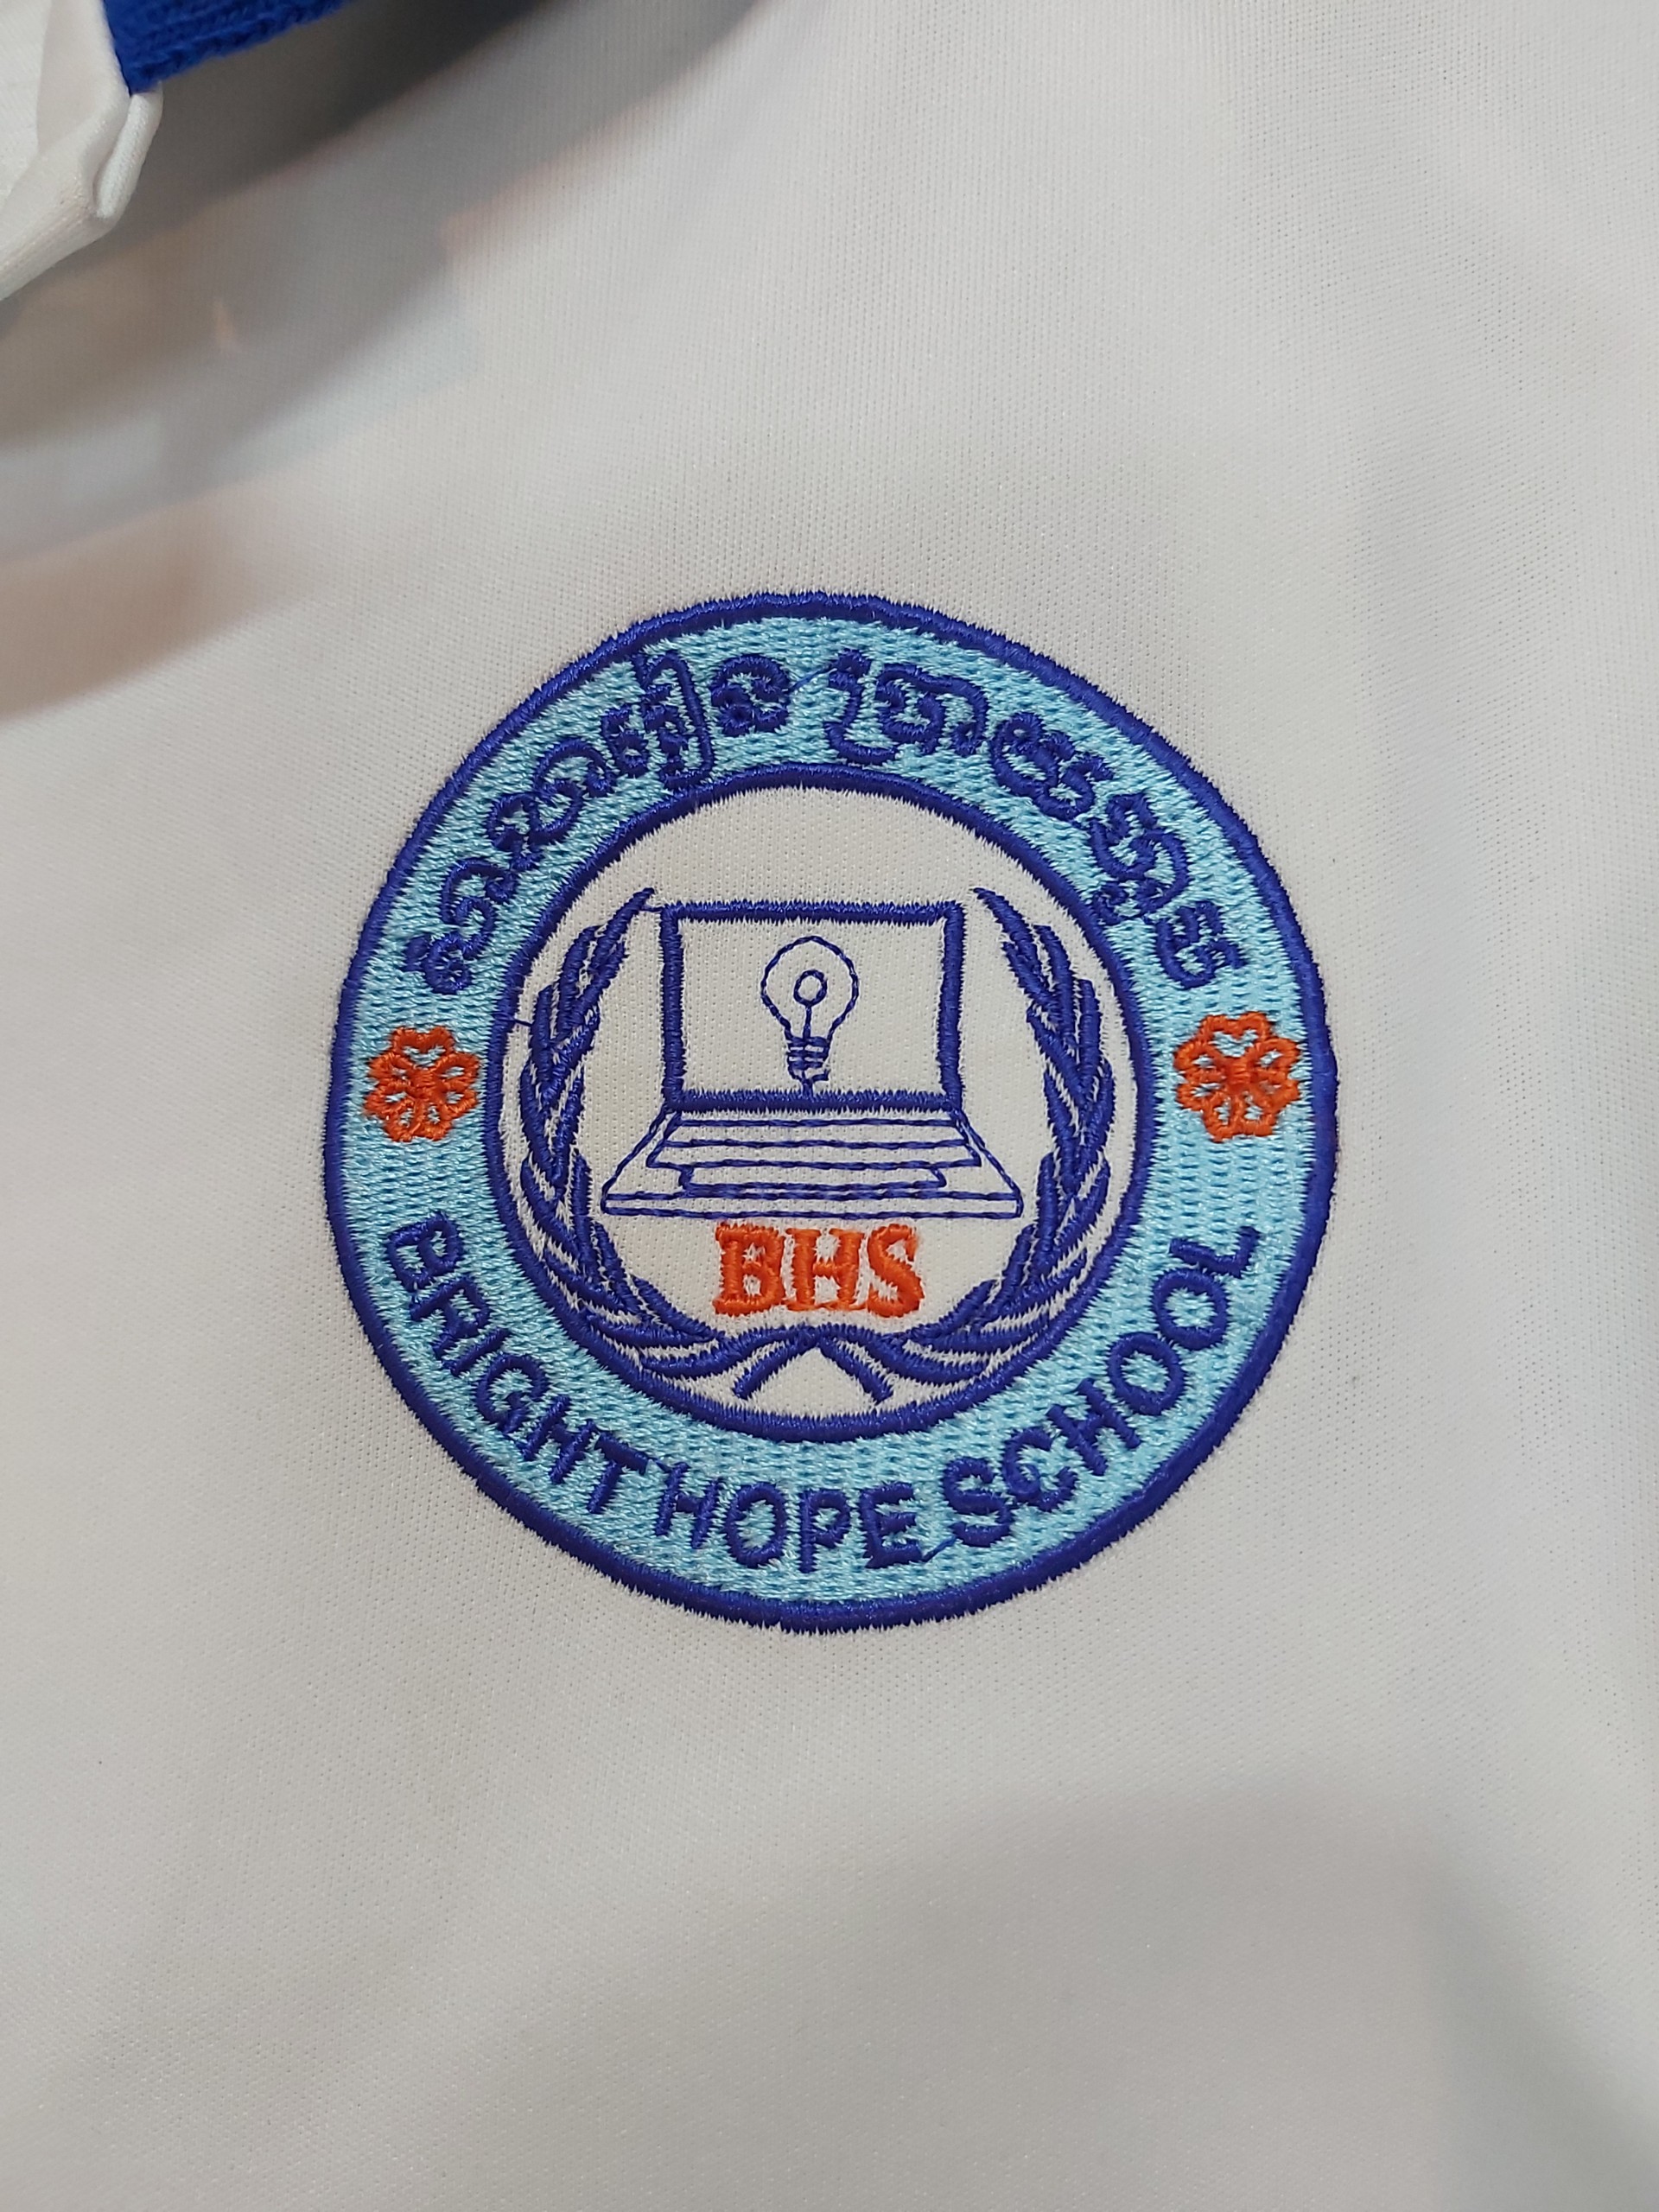 đơn thêu logo trên áo của trường bright hope school